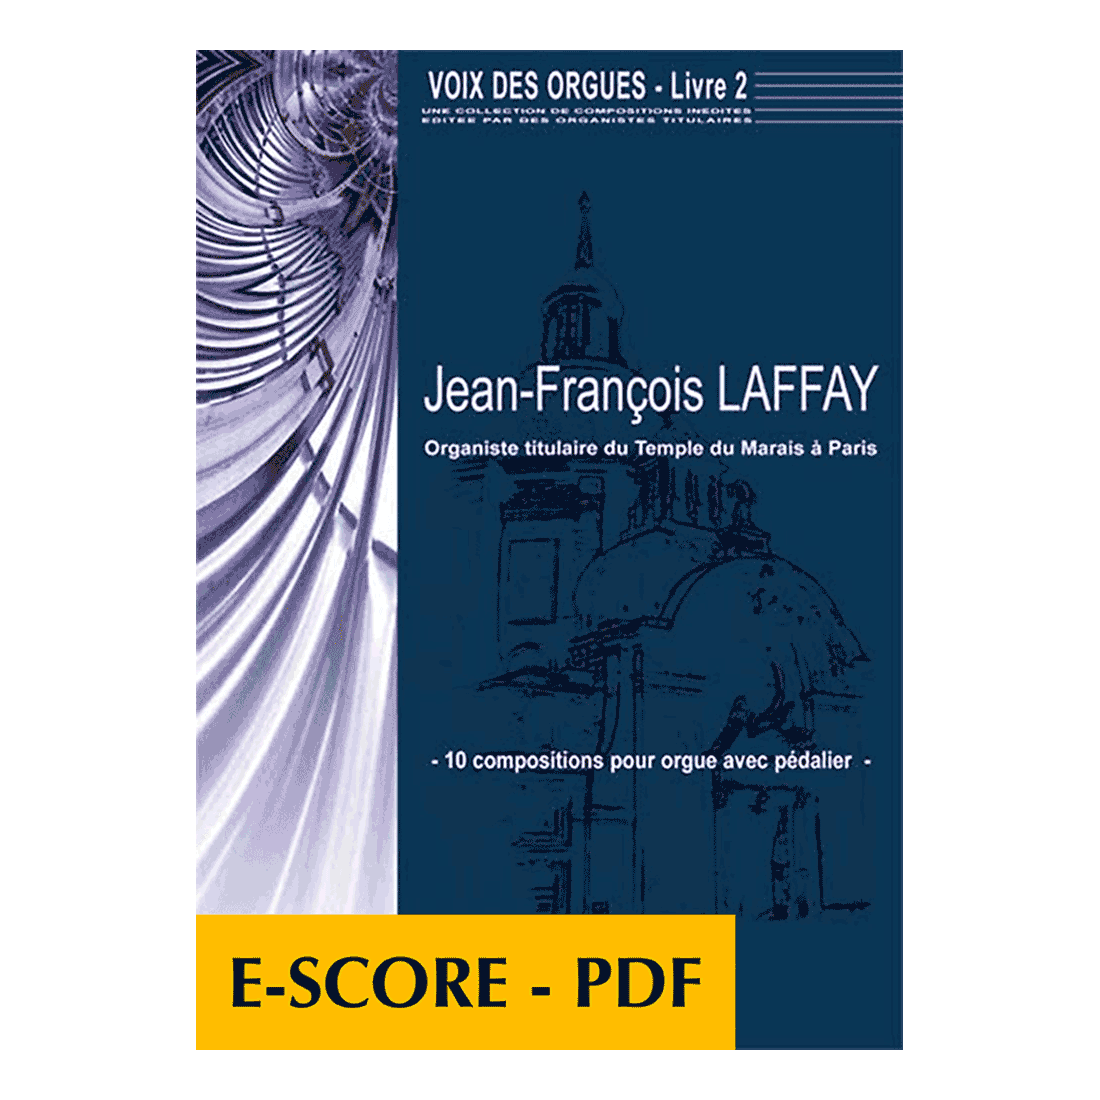 Voix des orgues - Buch 2 - E-score PDF